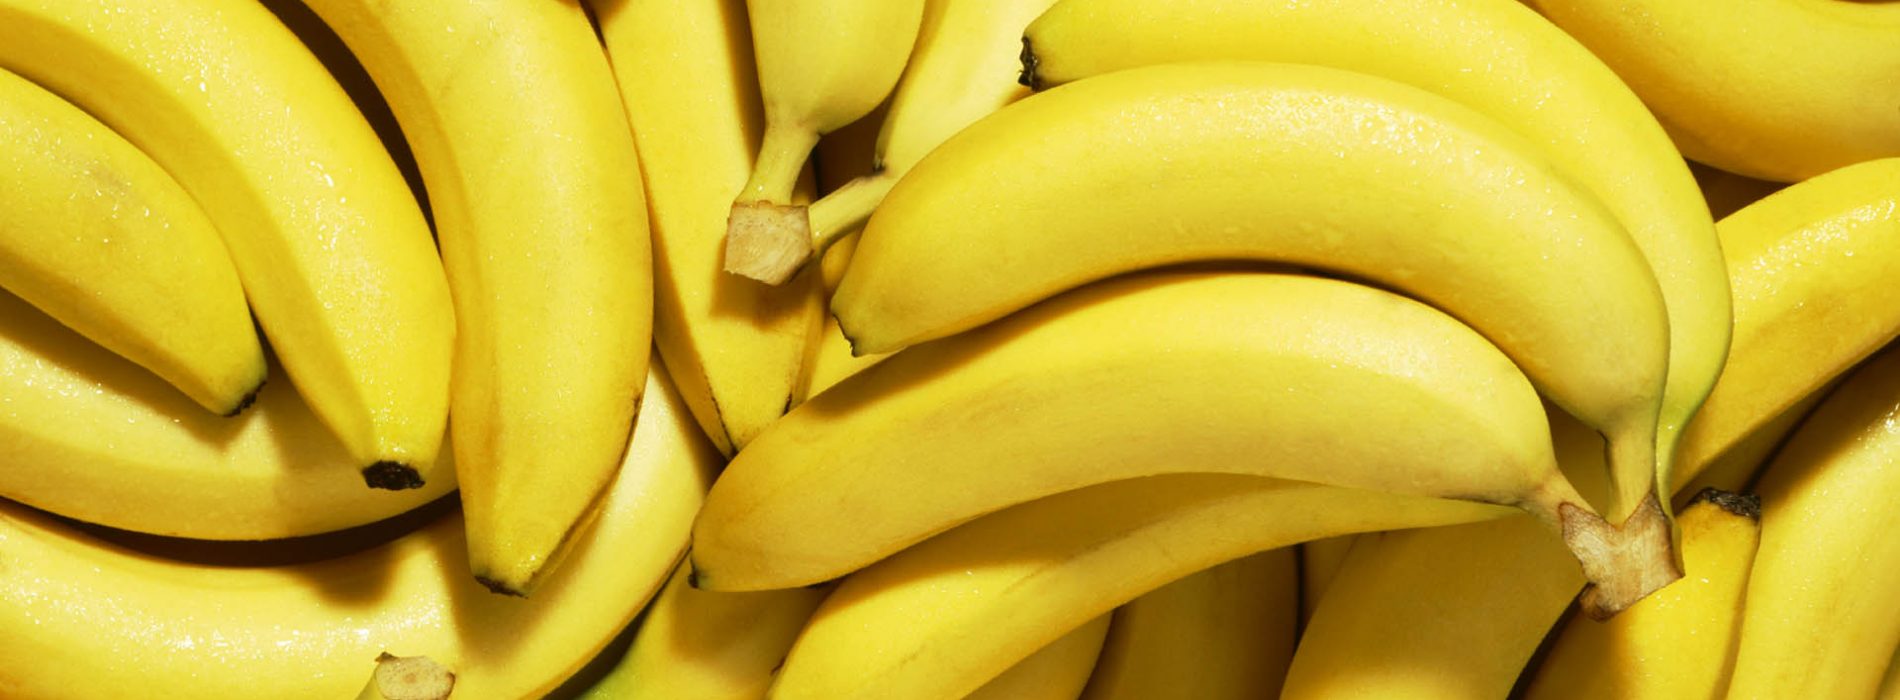 Bananen nieuw wondermiddel in strijd tegen beroertes